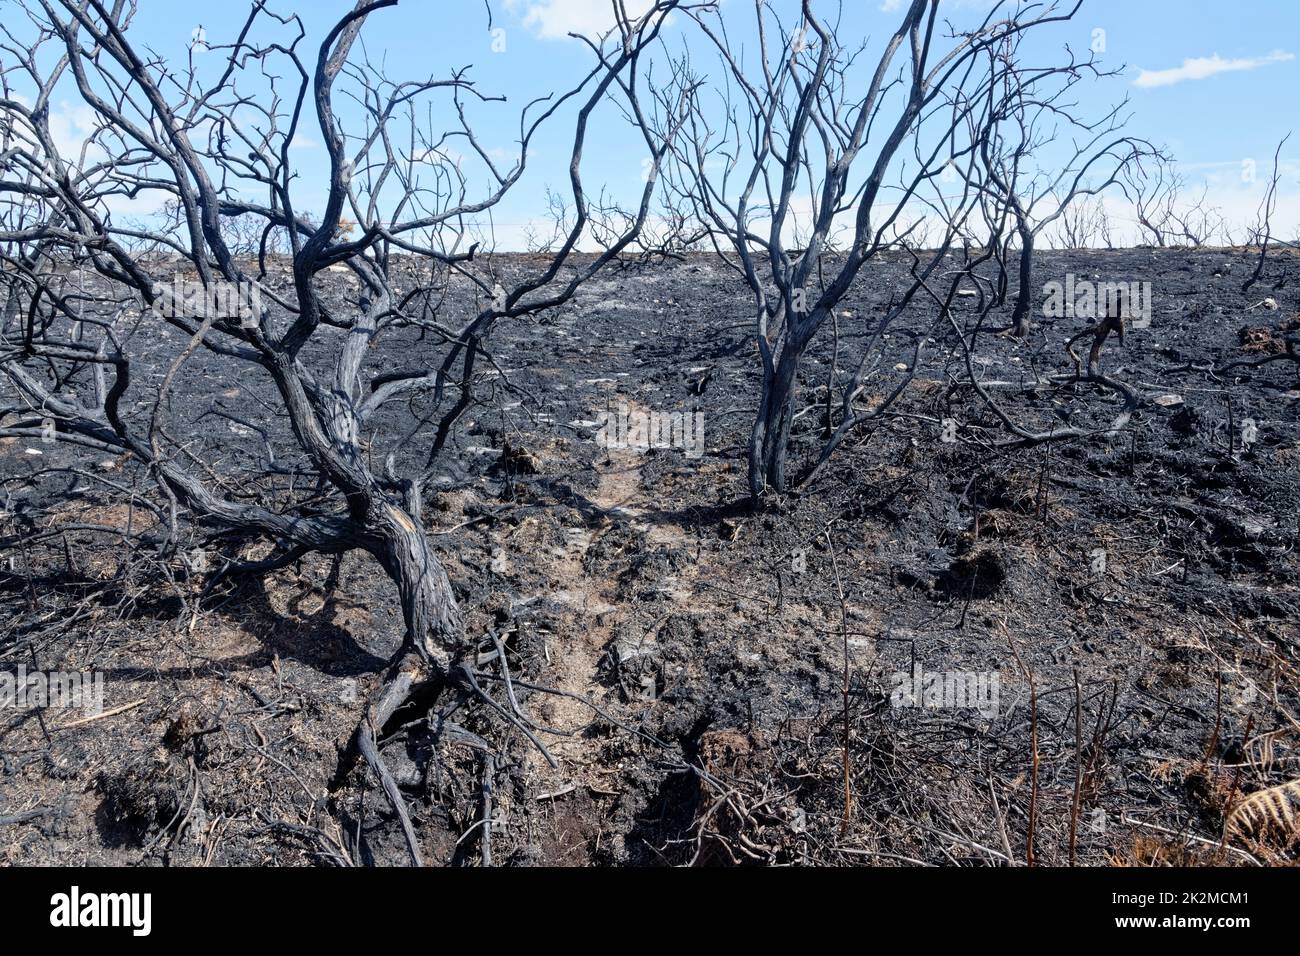 Parche de 5 hectáreas de brezales gravemente quemado por un gran incendio, probablemente iniciado por una barbacoa desechable, Studland Heath, Isla de Purbeck, agosto de 2022. Foto de stock